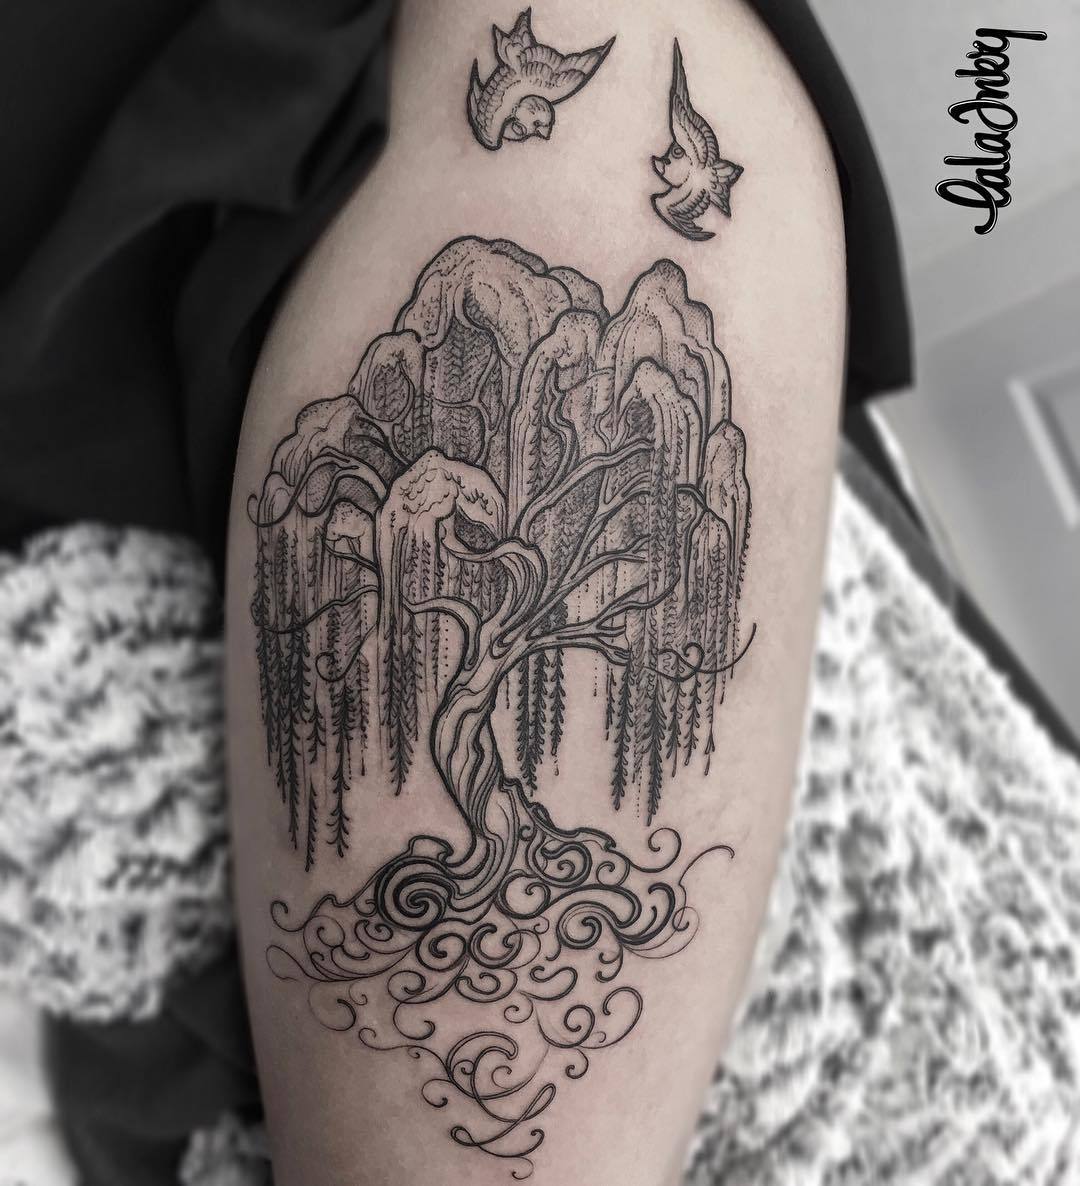 Willow tree  done today by Aja Ann Winter tattoo Dunedin NZ  rtattoos